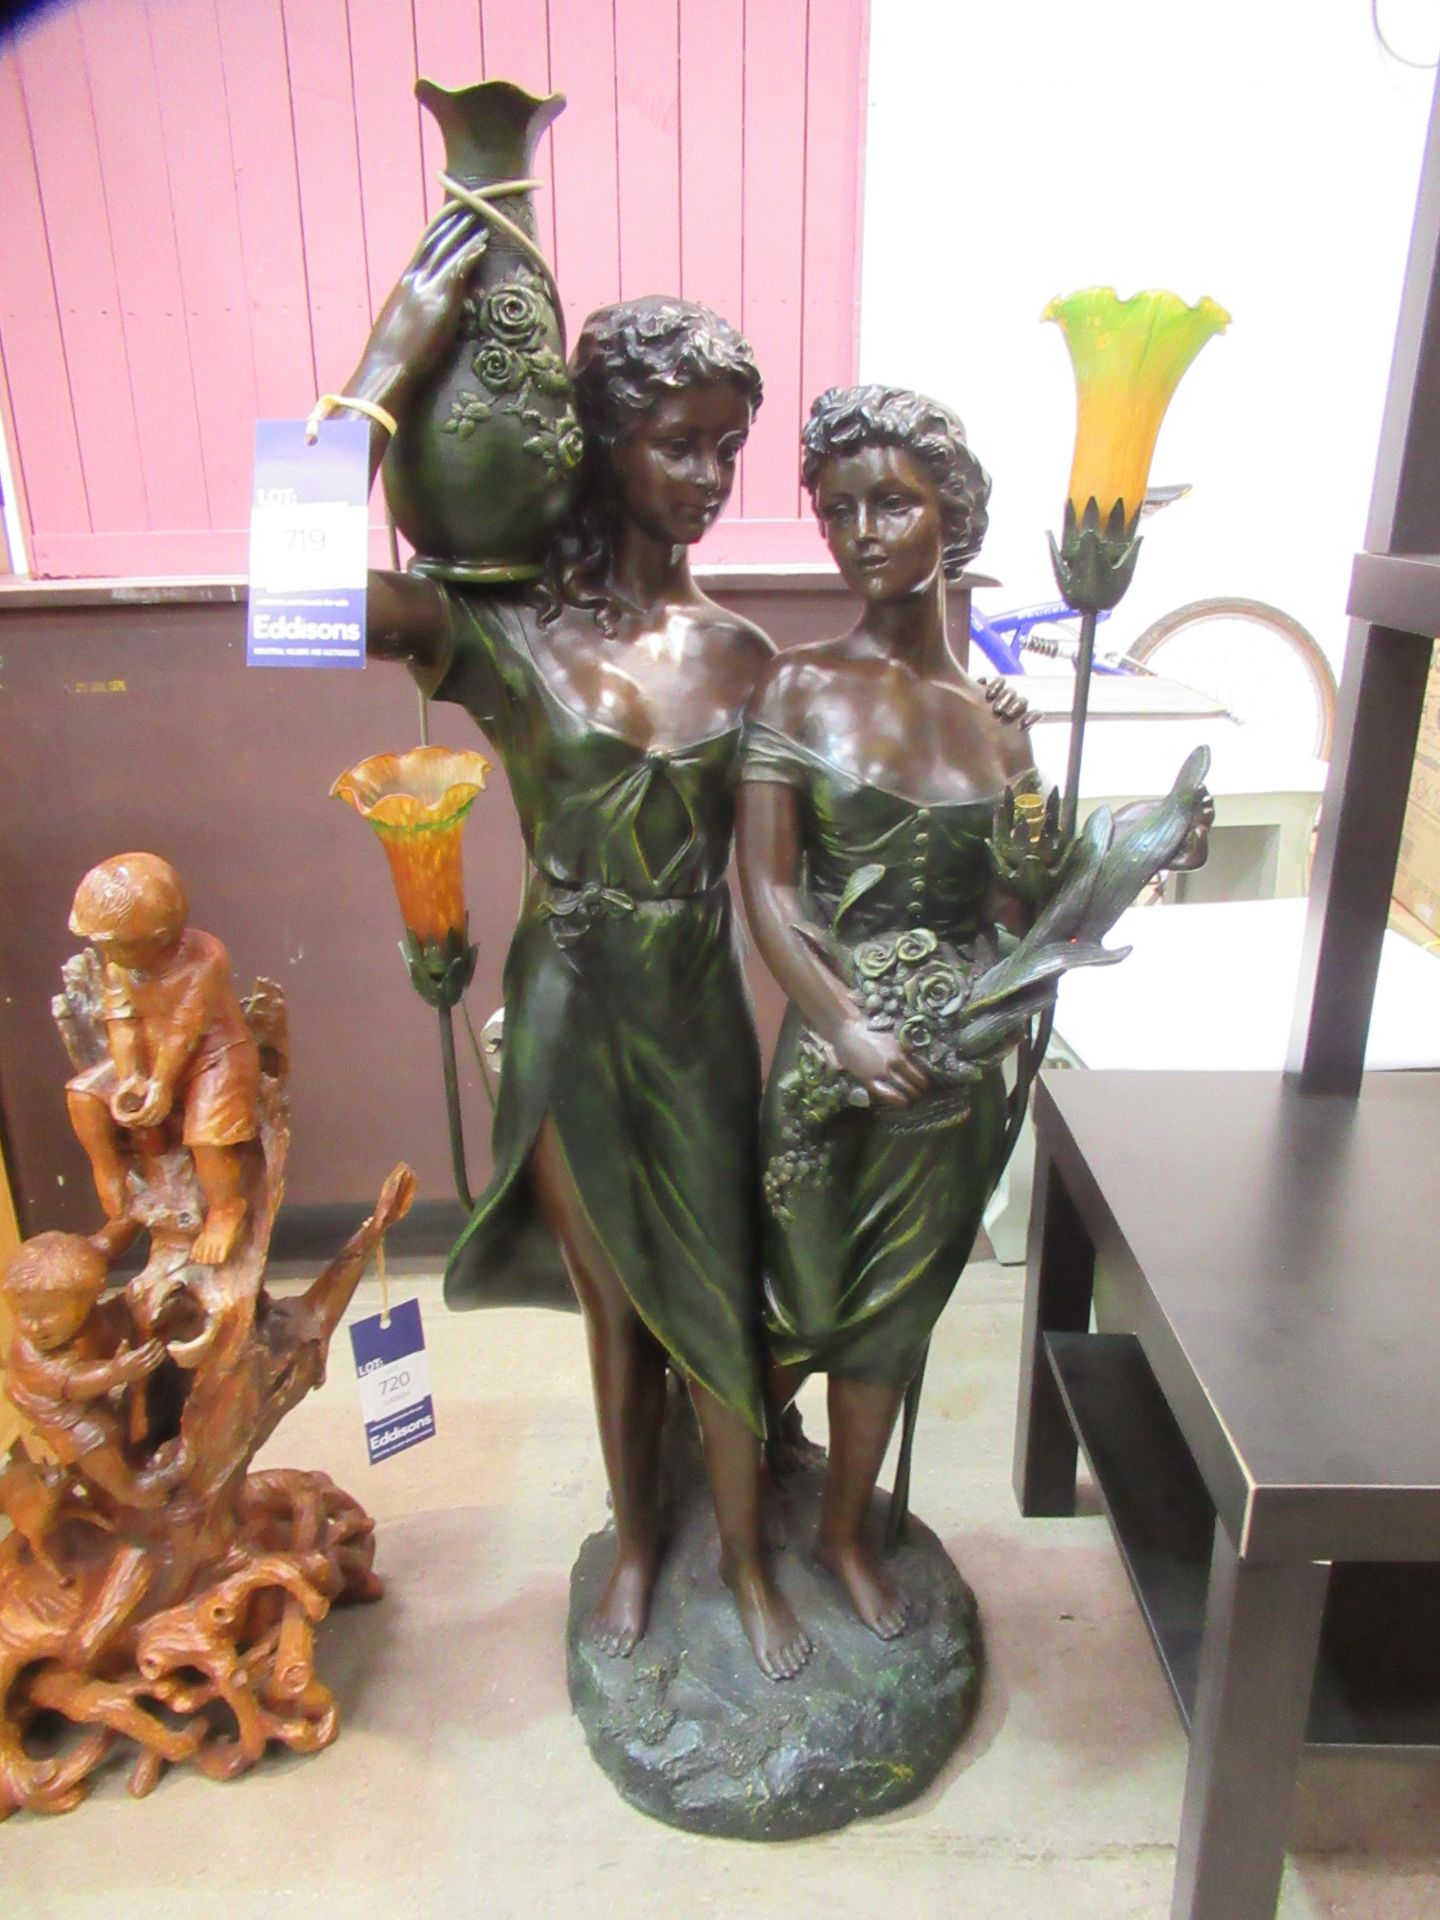 Resin Floor Standing Lamp Depicting Two Women